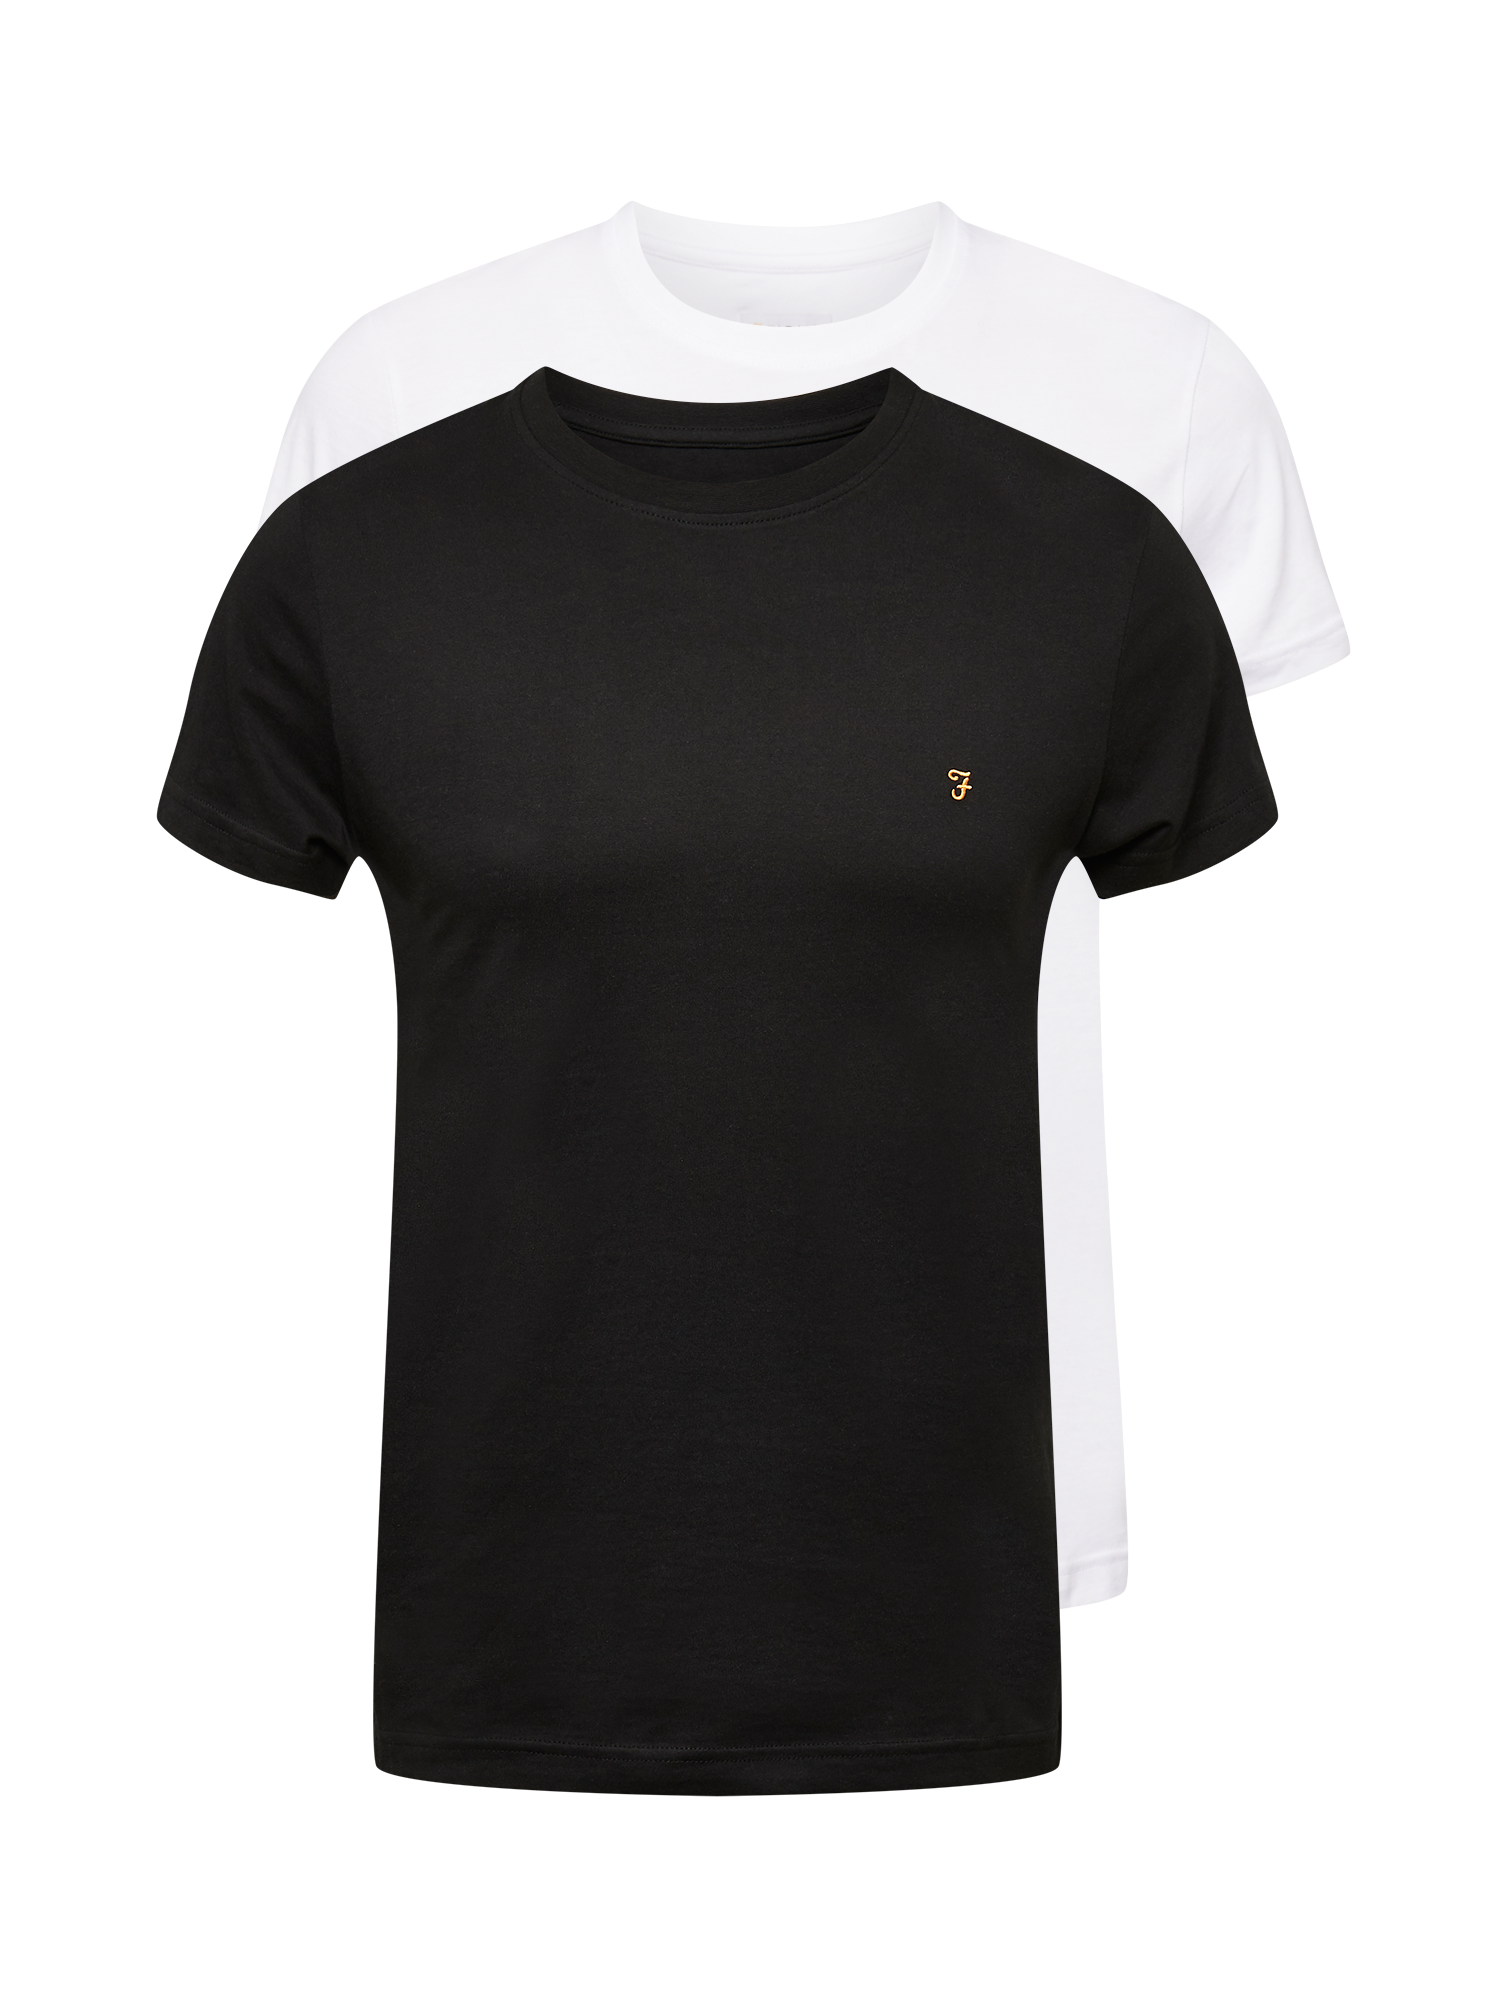 Odzież Mężczyźni FARAH Koszulka w kolorze Biały, Czarnym 